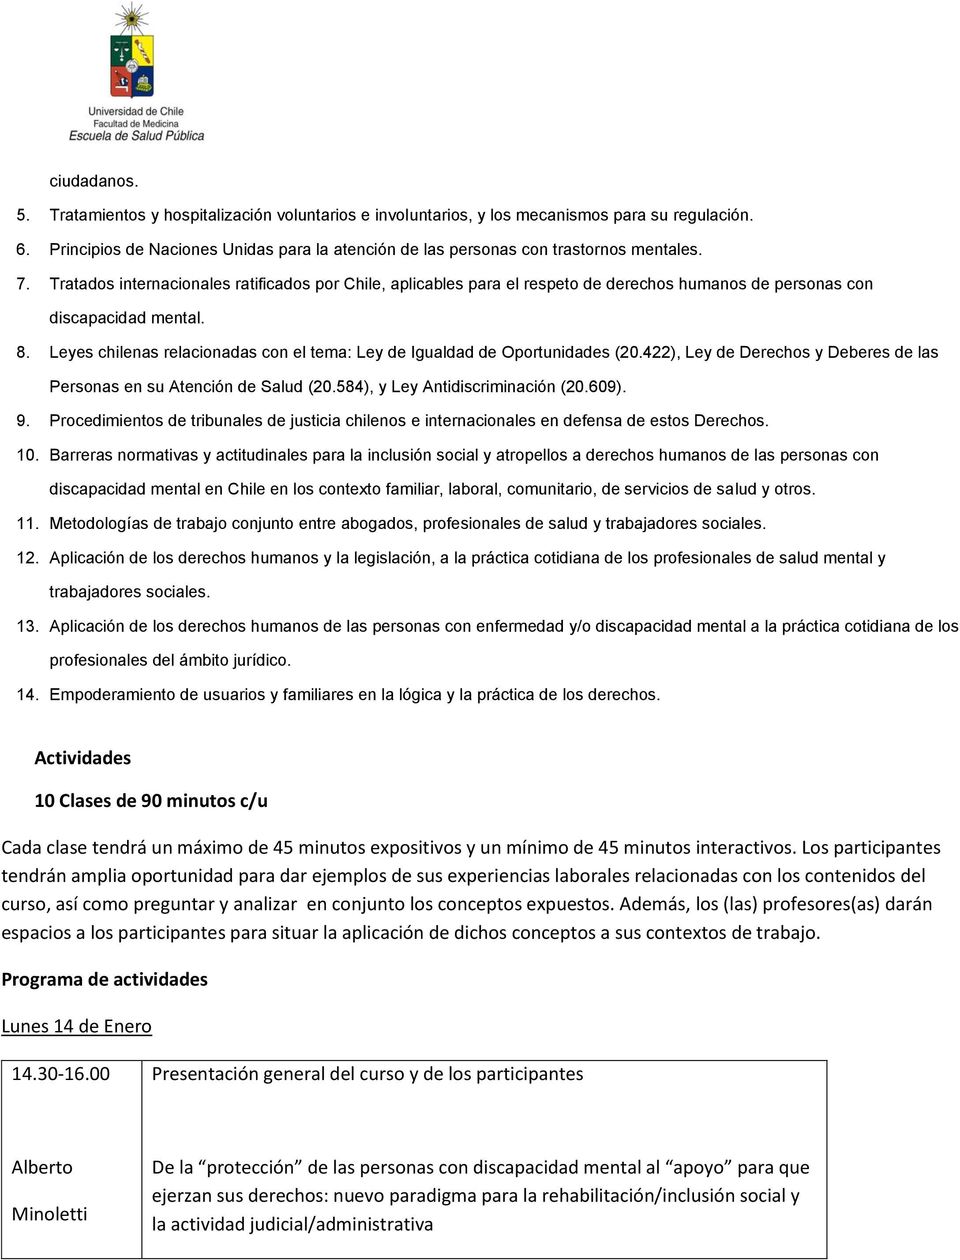 Leyes chilenas relacinadas cn el tema: Ley de Igualdad de Oprtunidades (20.422), Ley de Derechs y Deberes de las Persnas en su Atención de Salud (20.584), y Ley Antidiscriminación (20.609). 9.